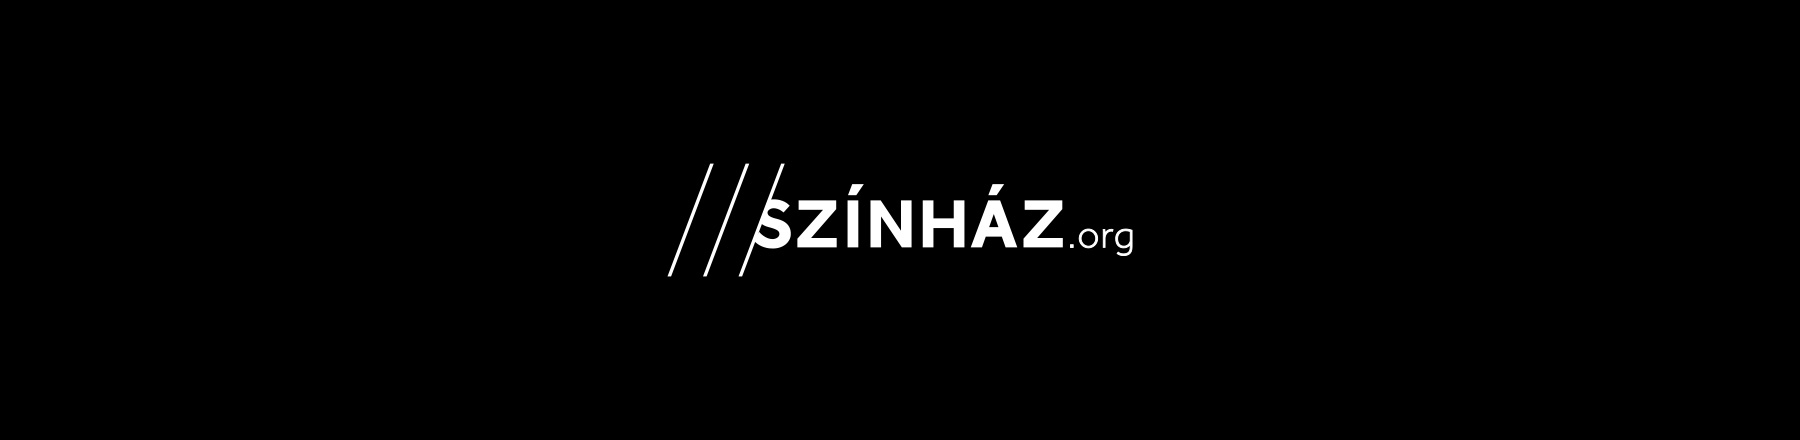 szinhaz org 3